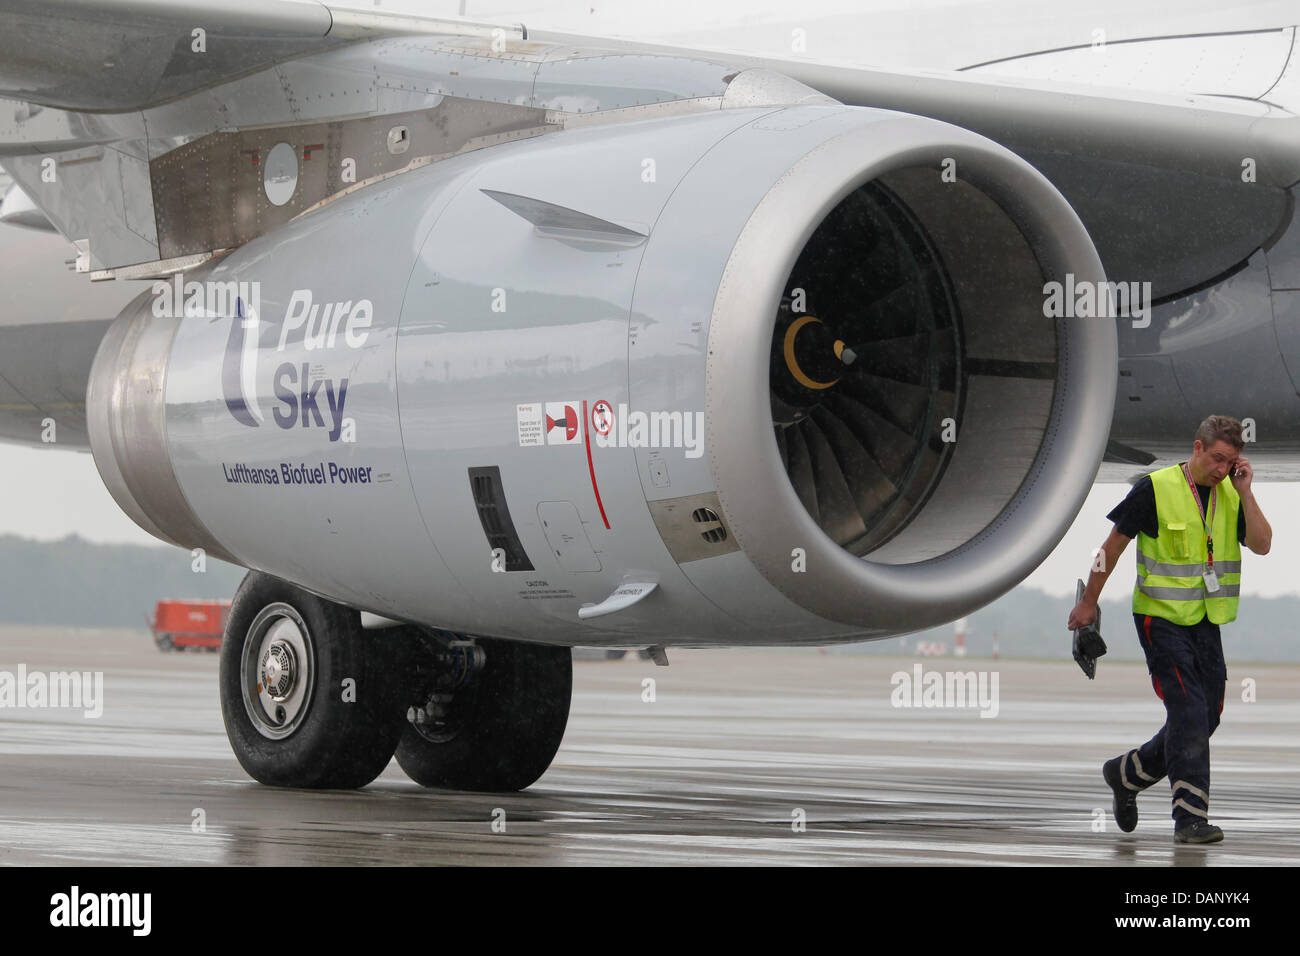 Un membro dell' equipaggio arriva a bordo di una Lufthansa Airbus A321-200 che è alimentato con carburante verde ad Amburgo, Germania, 15 luglio 2011. Lufthansa è la prima compagnia di volo di utilizzare carburante verde in tutto il mondo sui voli di linea. Voli Lufthansa sono alimentati con un 50 per cento mix di biocarburante e cherosene. Foto: Markus Scholz Foto Stock